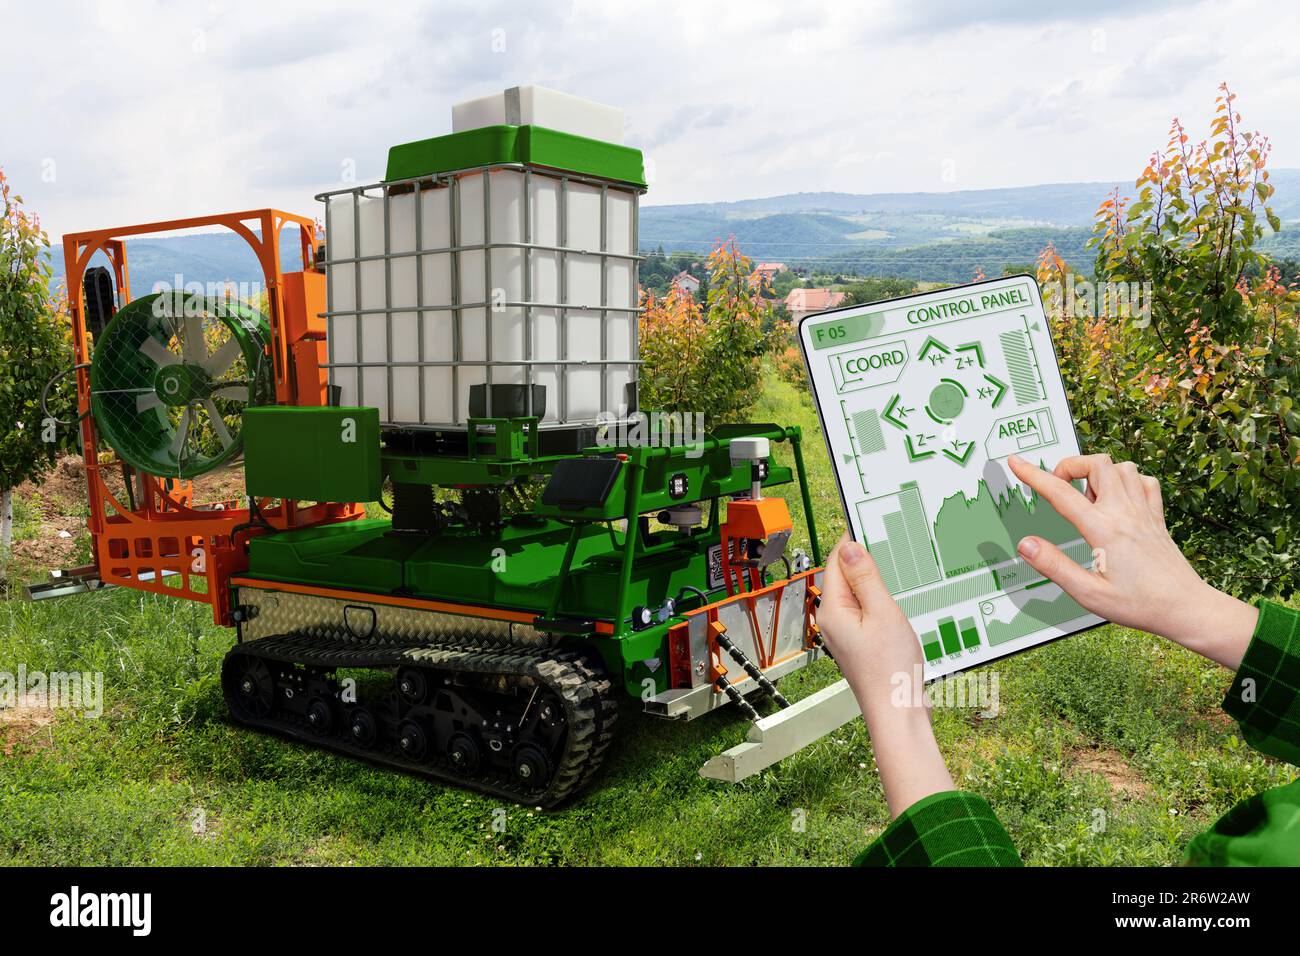 Farmer controls autonomous robot sprayer in a fruit garden. Smart farming concept Stock Photo